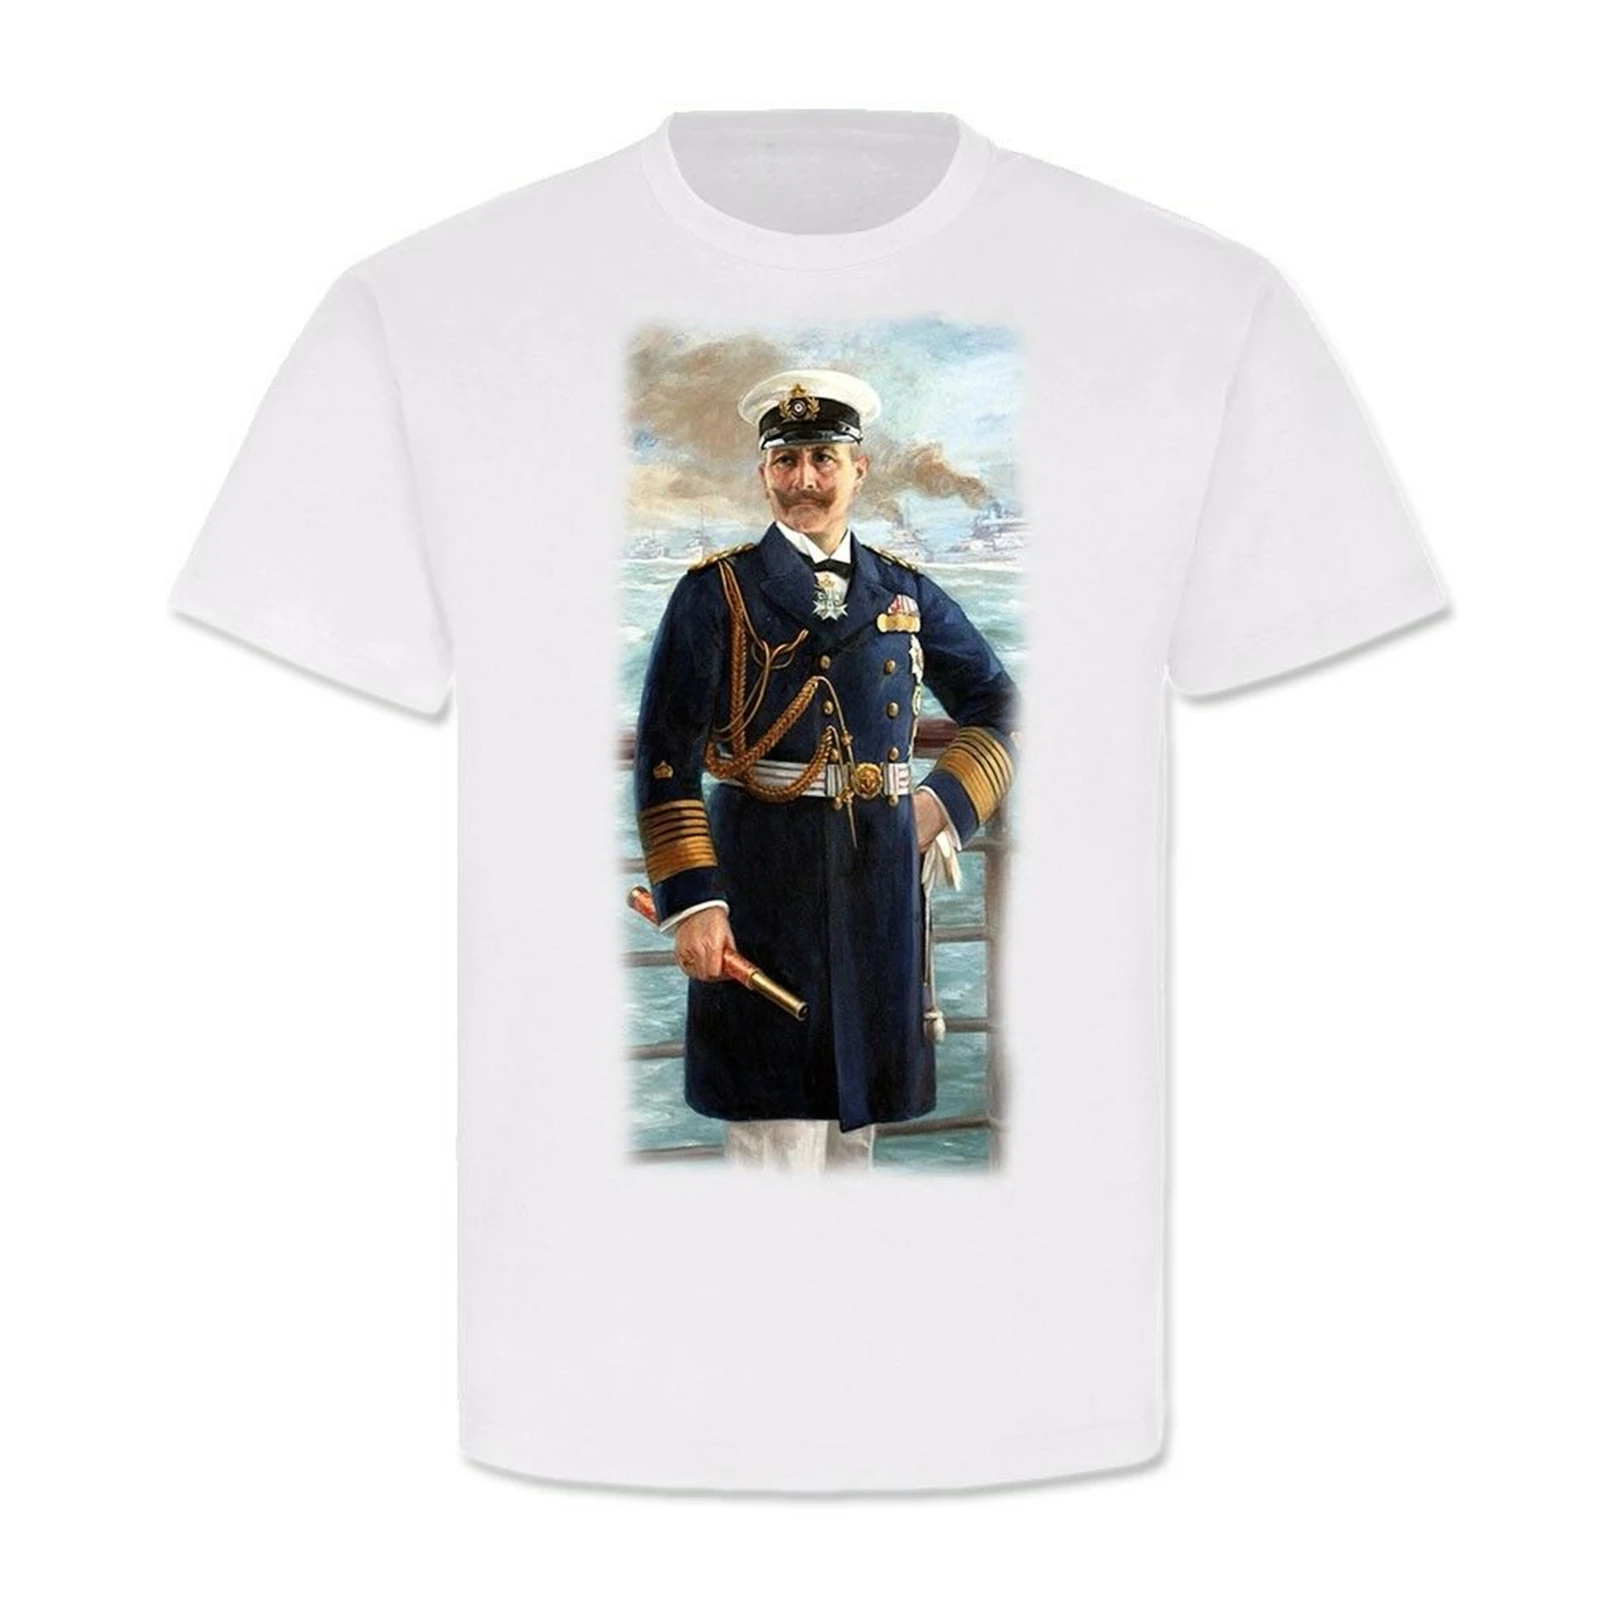 

Kaiser Wilhelm II Als Großadmiral 1913 Marine Willi König Preußen T-Shirt Men's 100% Cotton Casual T-shirts Loose Top Size S-3XL